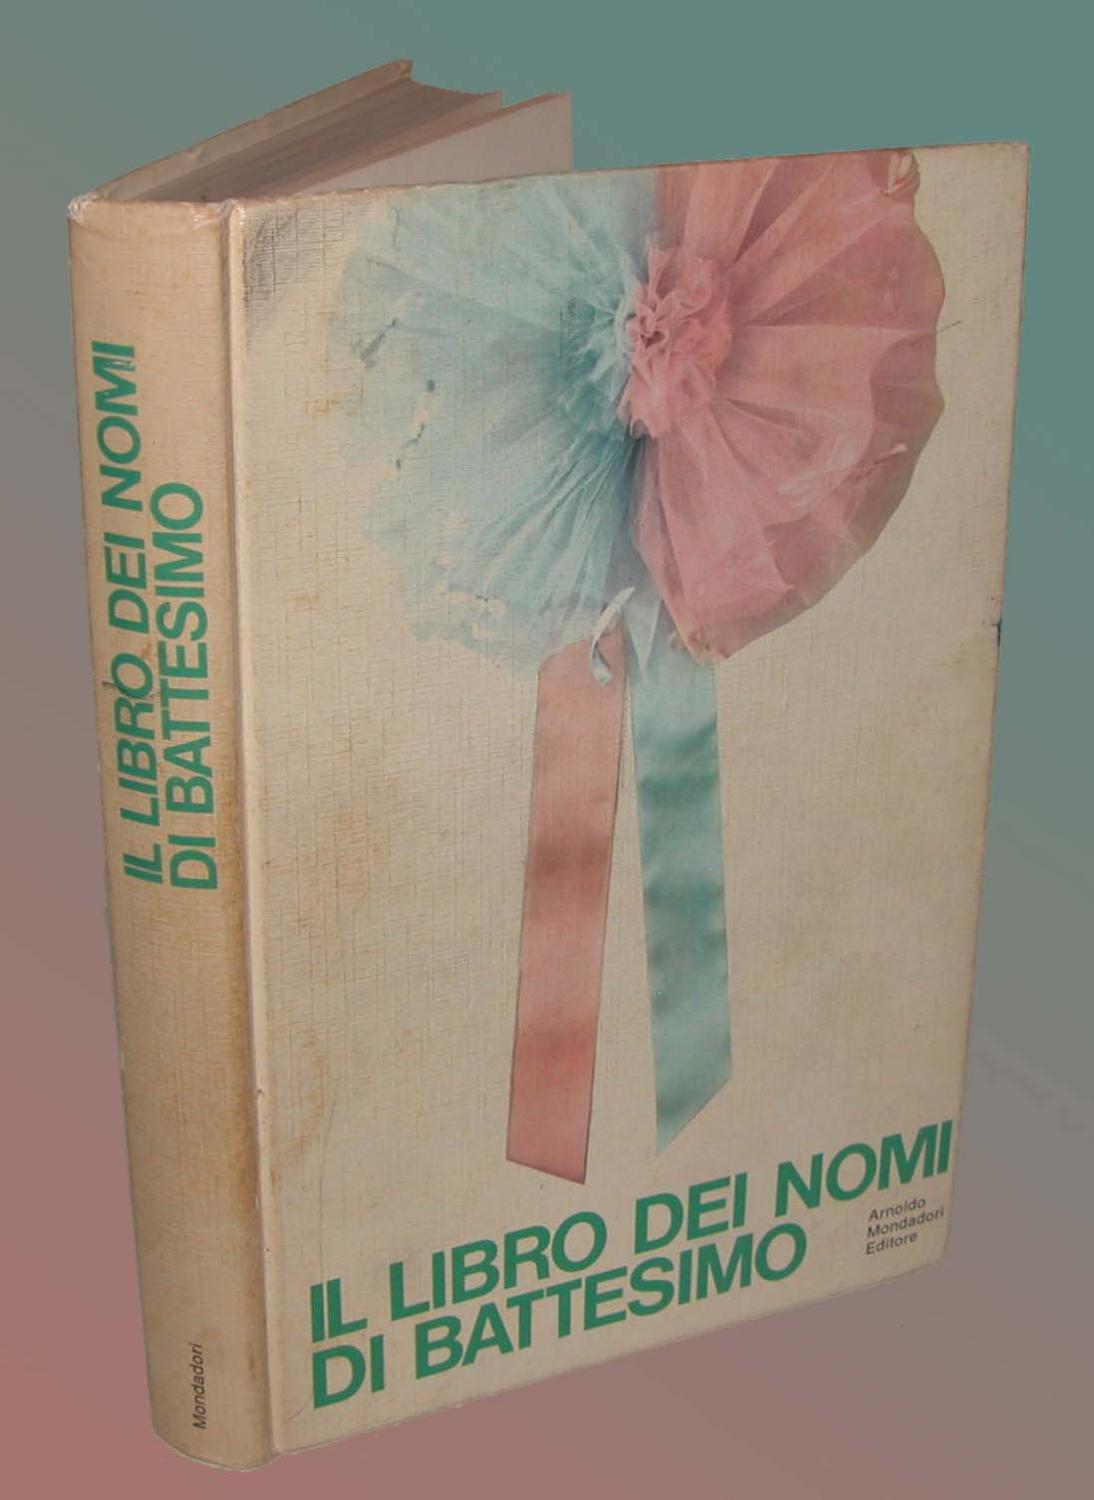 Il libro dei nomi di Battesimo de Carlo Fruttero ottimo Brossura (1969) Studio Bibliografico